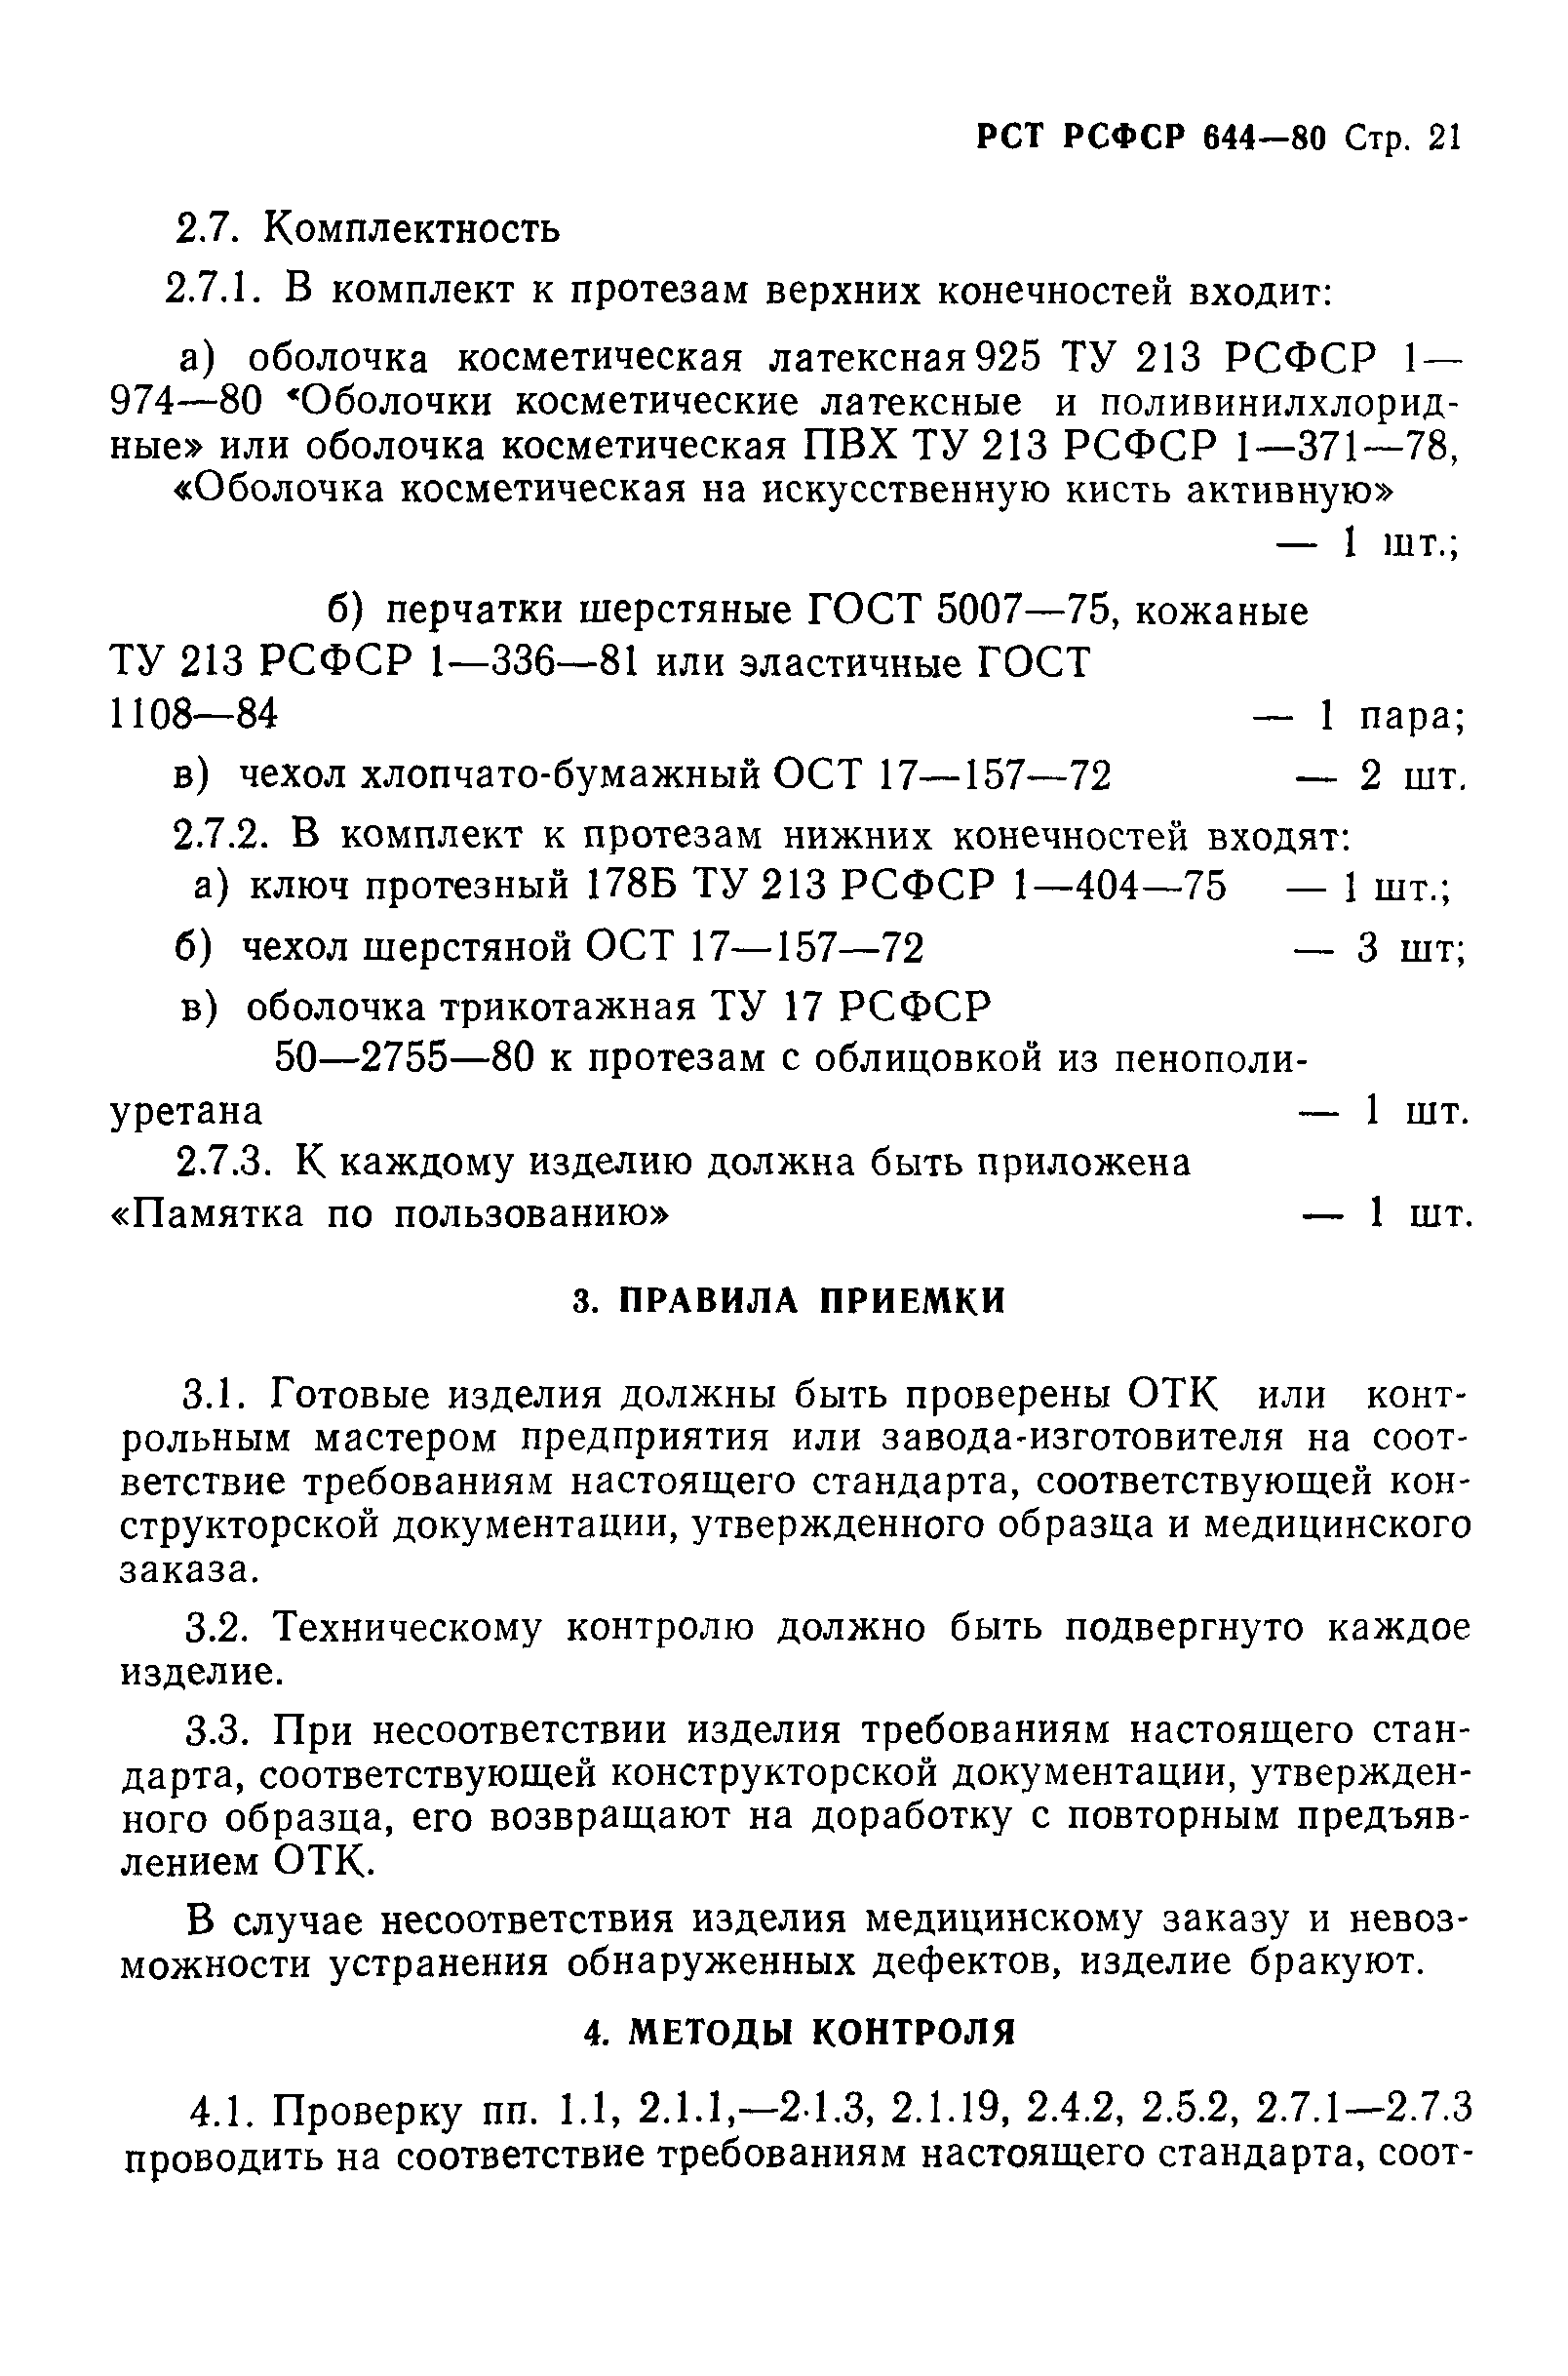 РСТ РСФСР 644-80